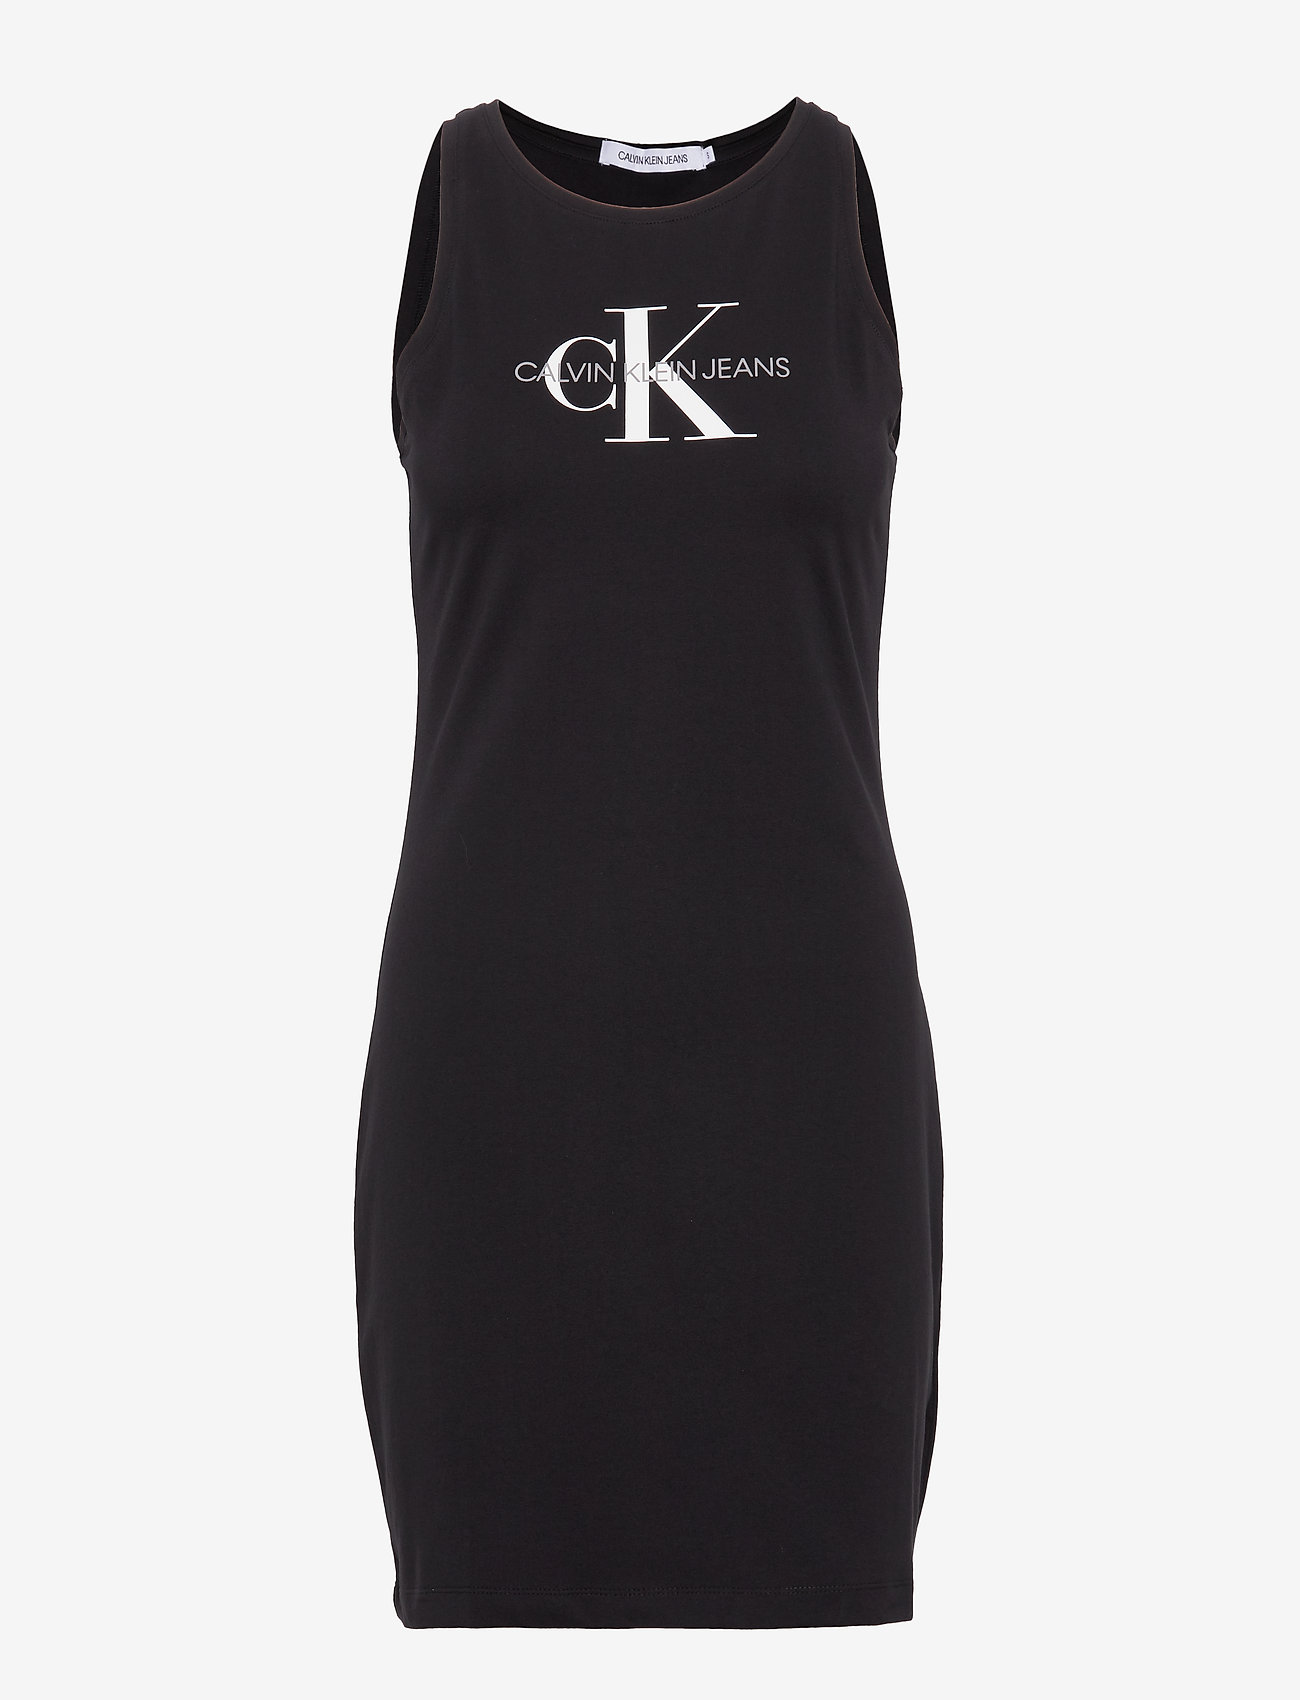 ck black dress